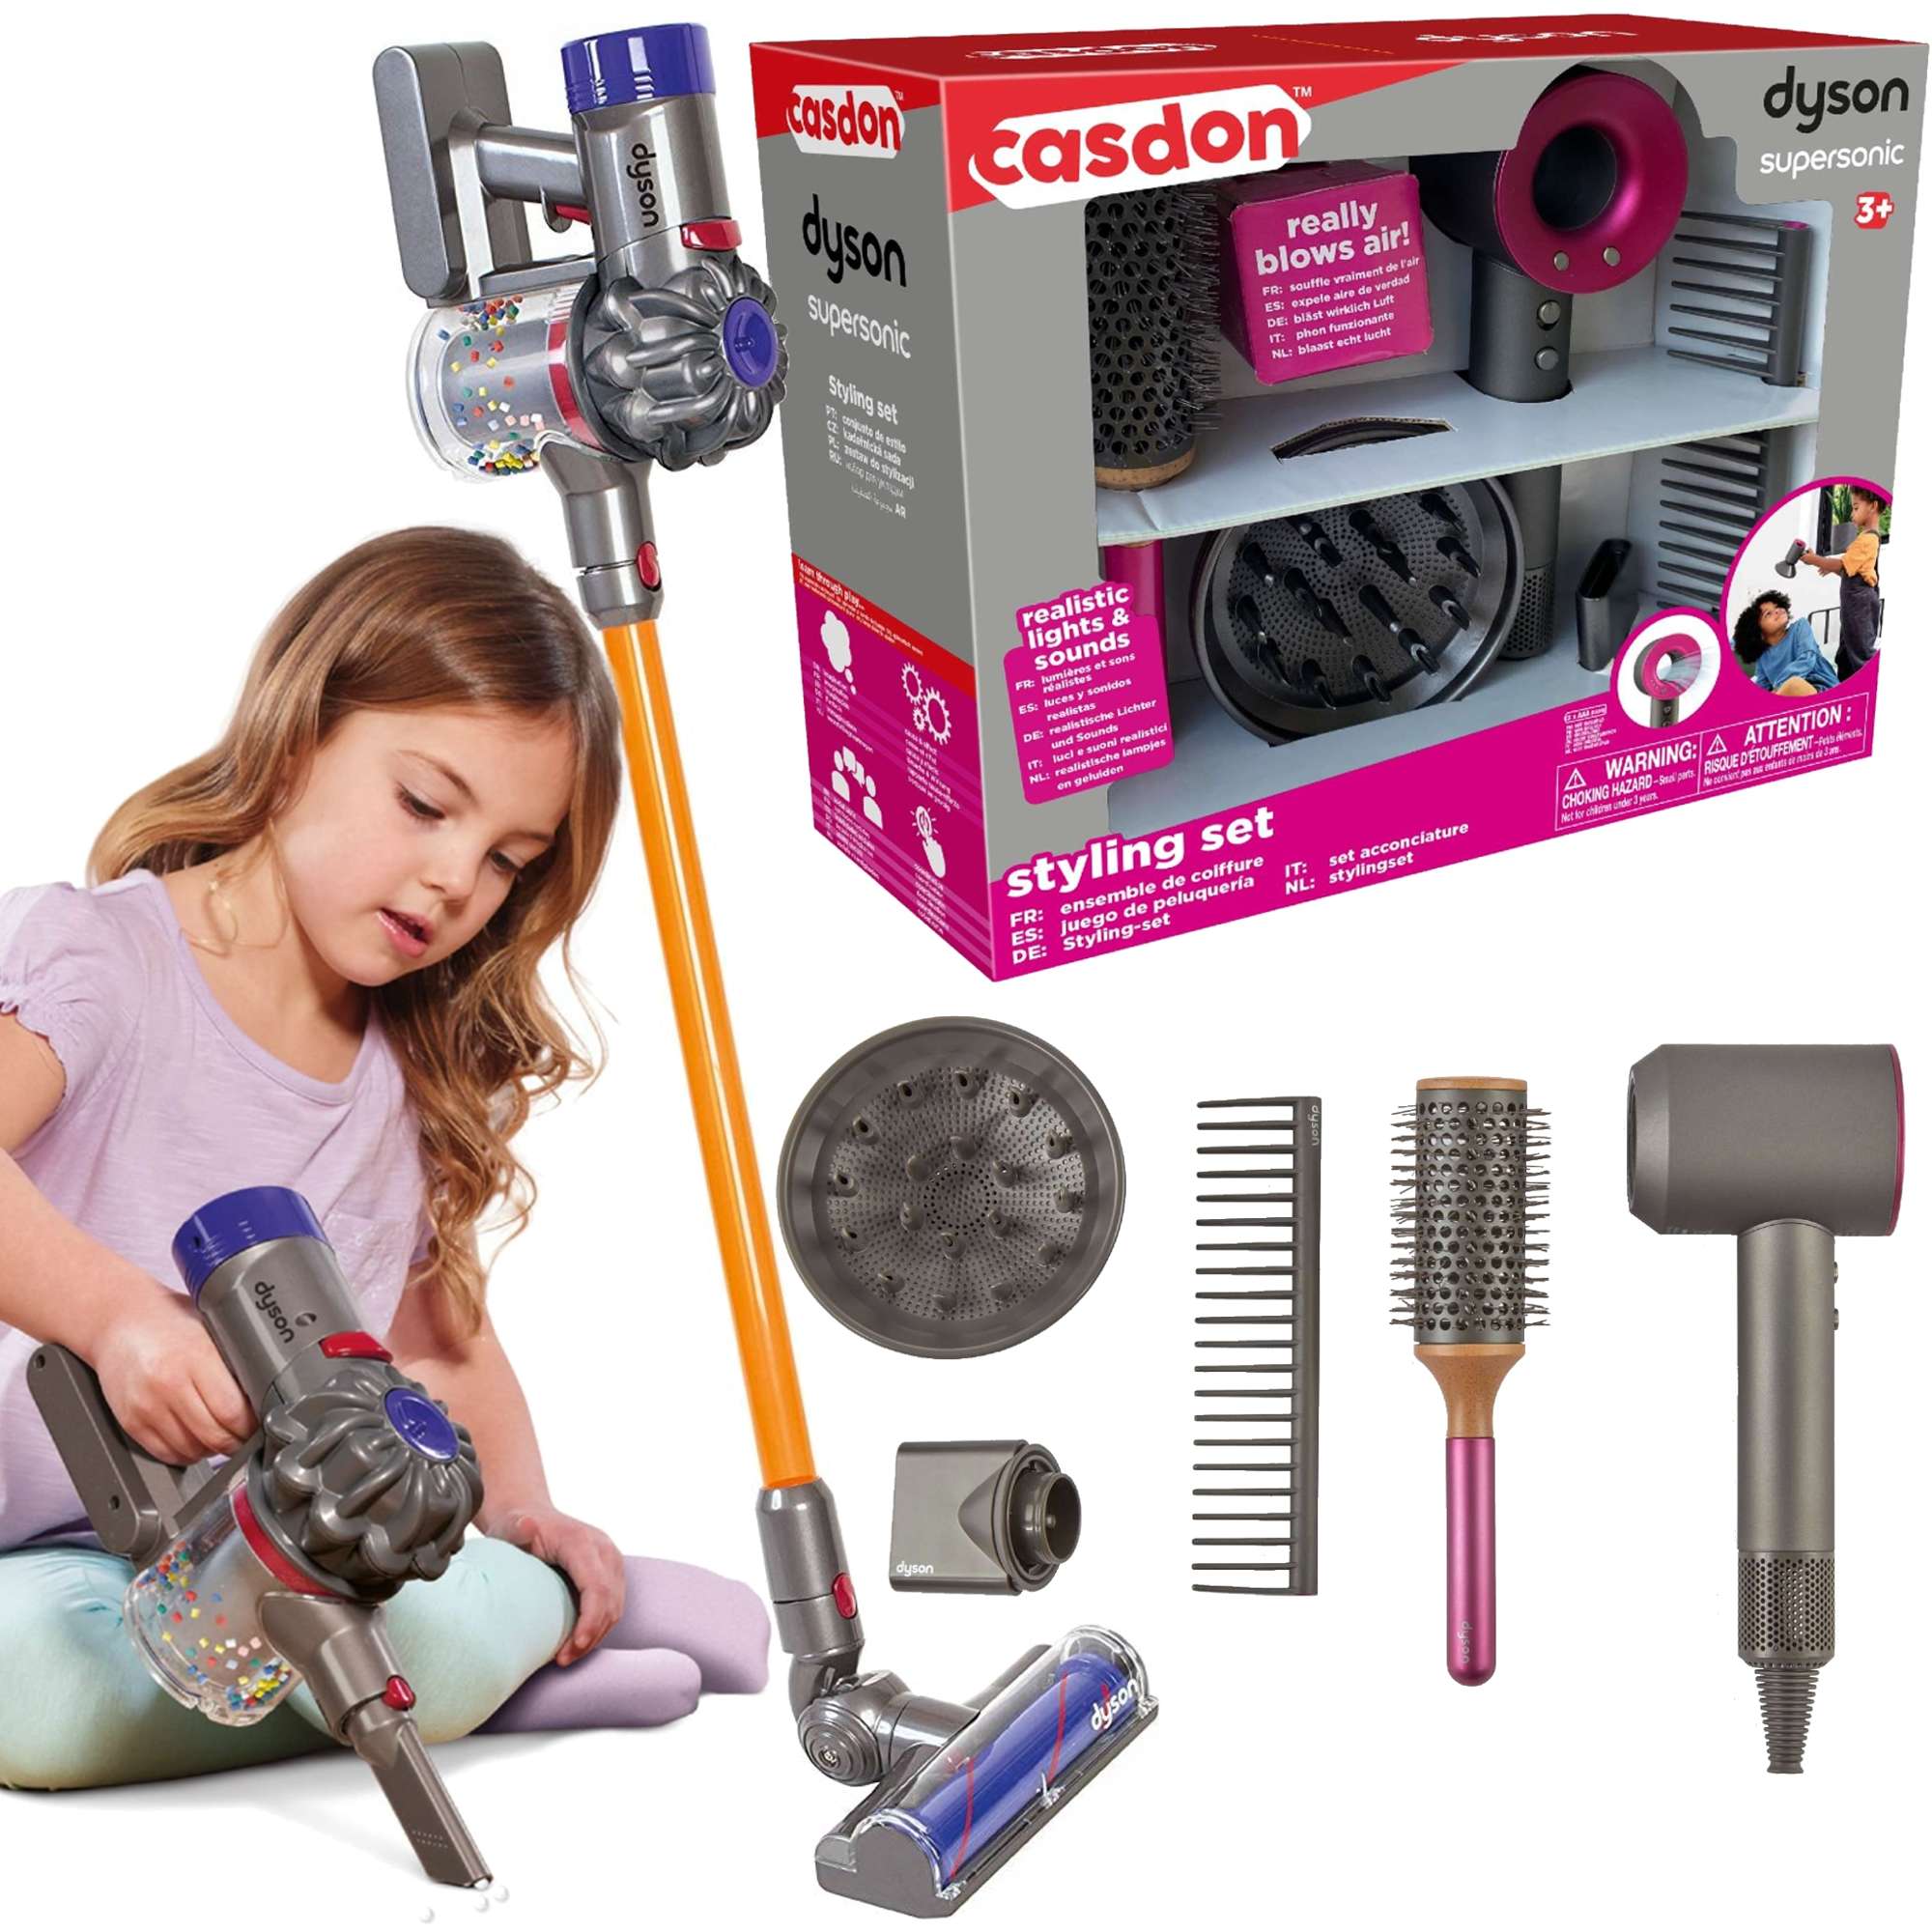 Staubsauger 5 Dyson Supersonic Stück+Spielzeug mit kabelloser Haarstyling-Set Casdon Haartrockner